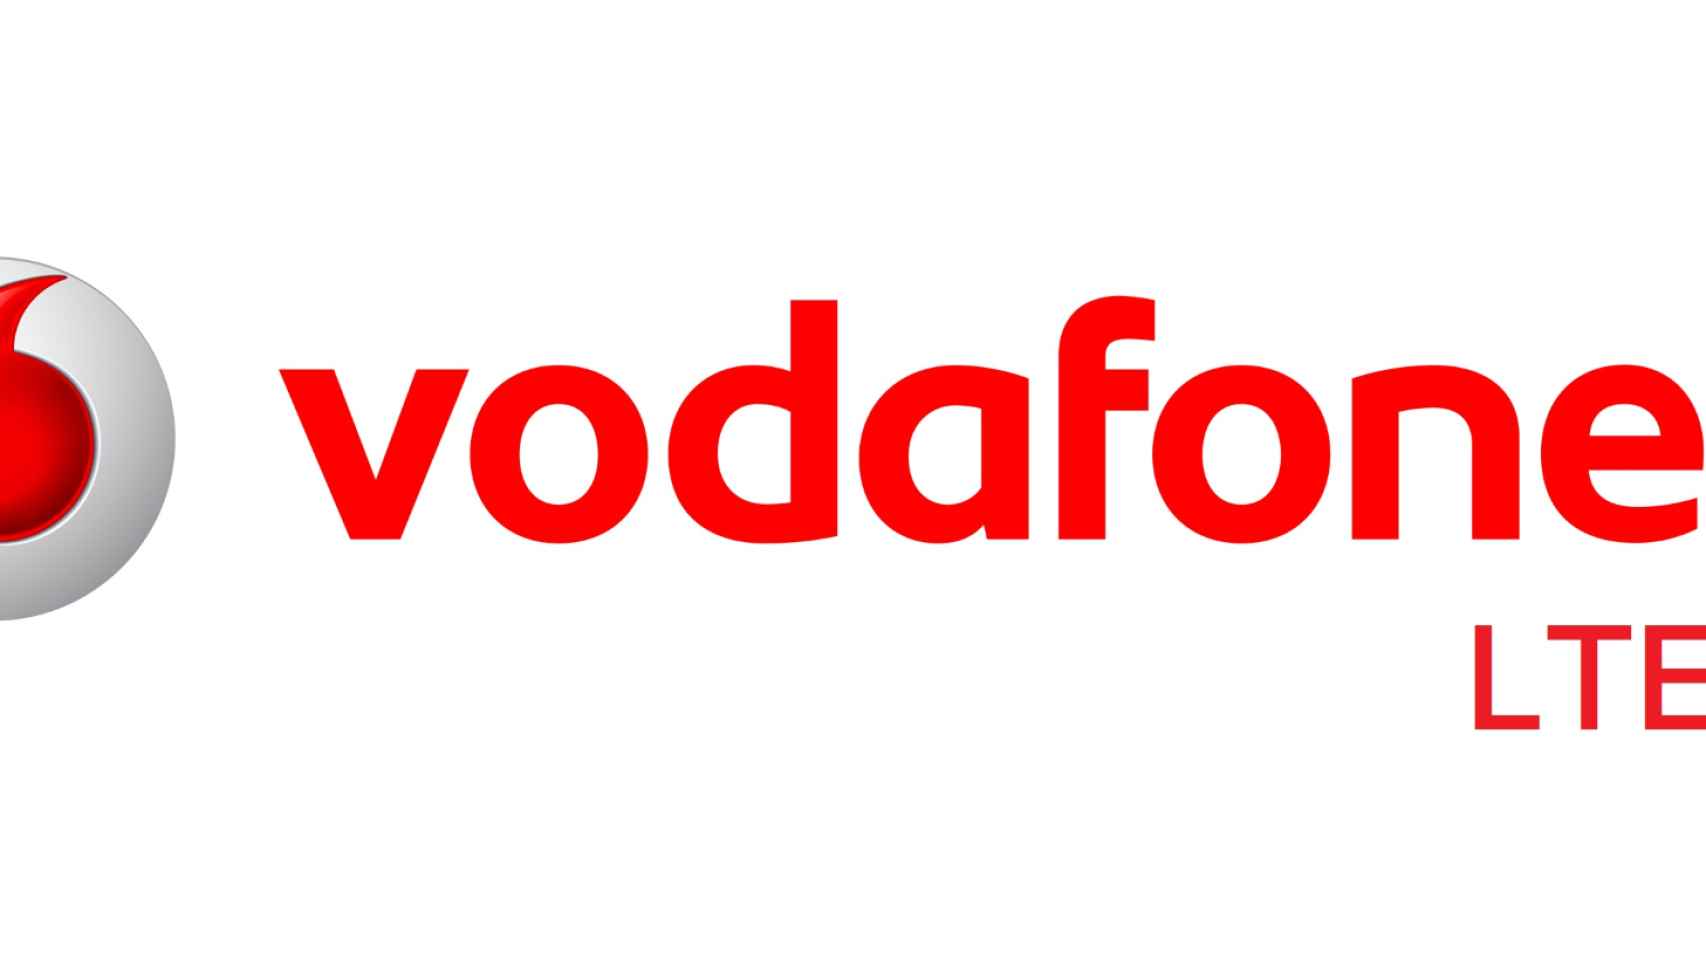 Vodafone ofrecerá conexiones móviles LTE-A de hasta 300 Mbps en octubre